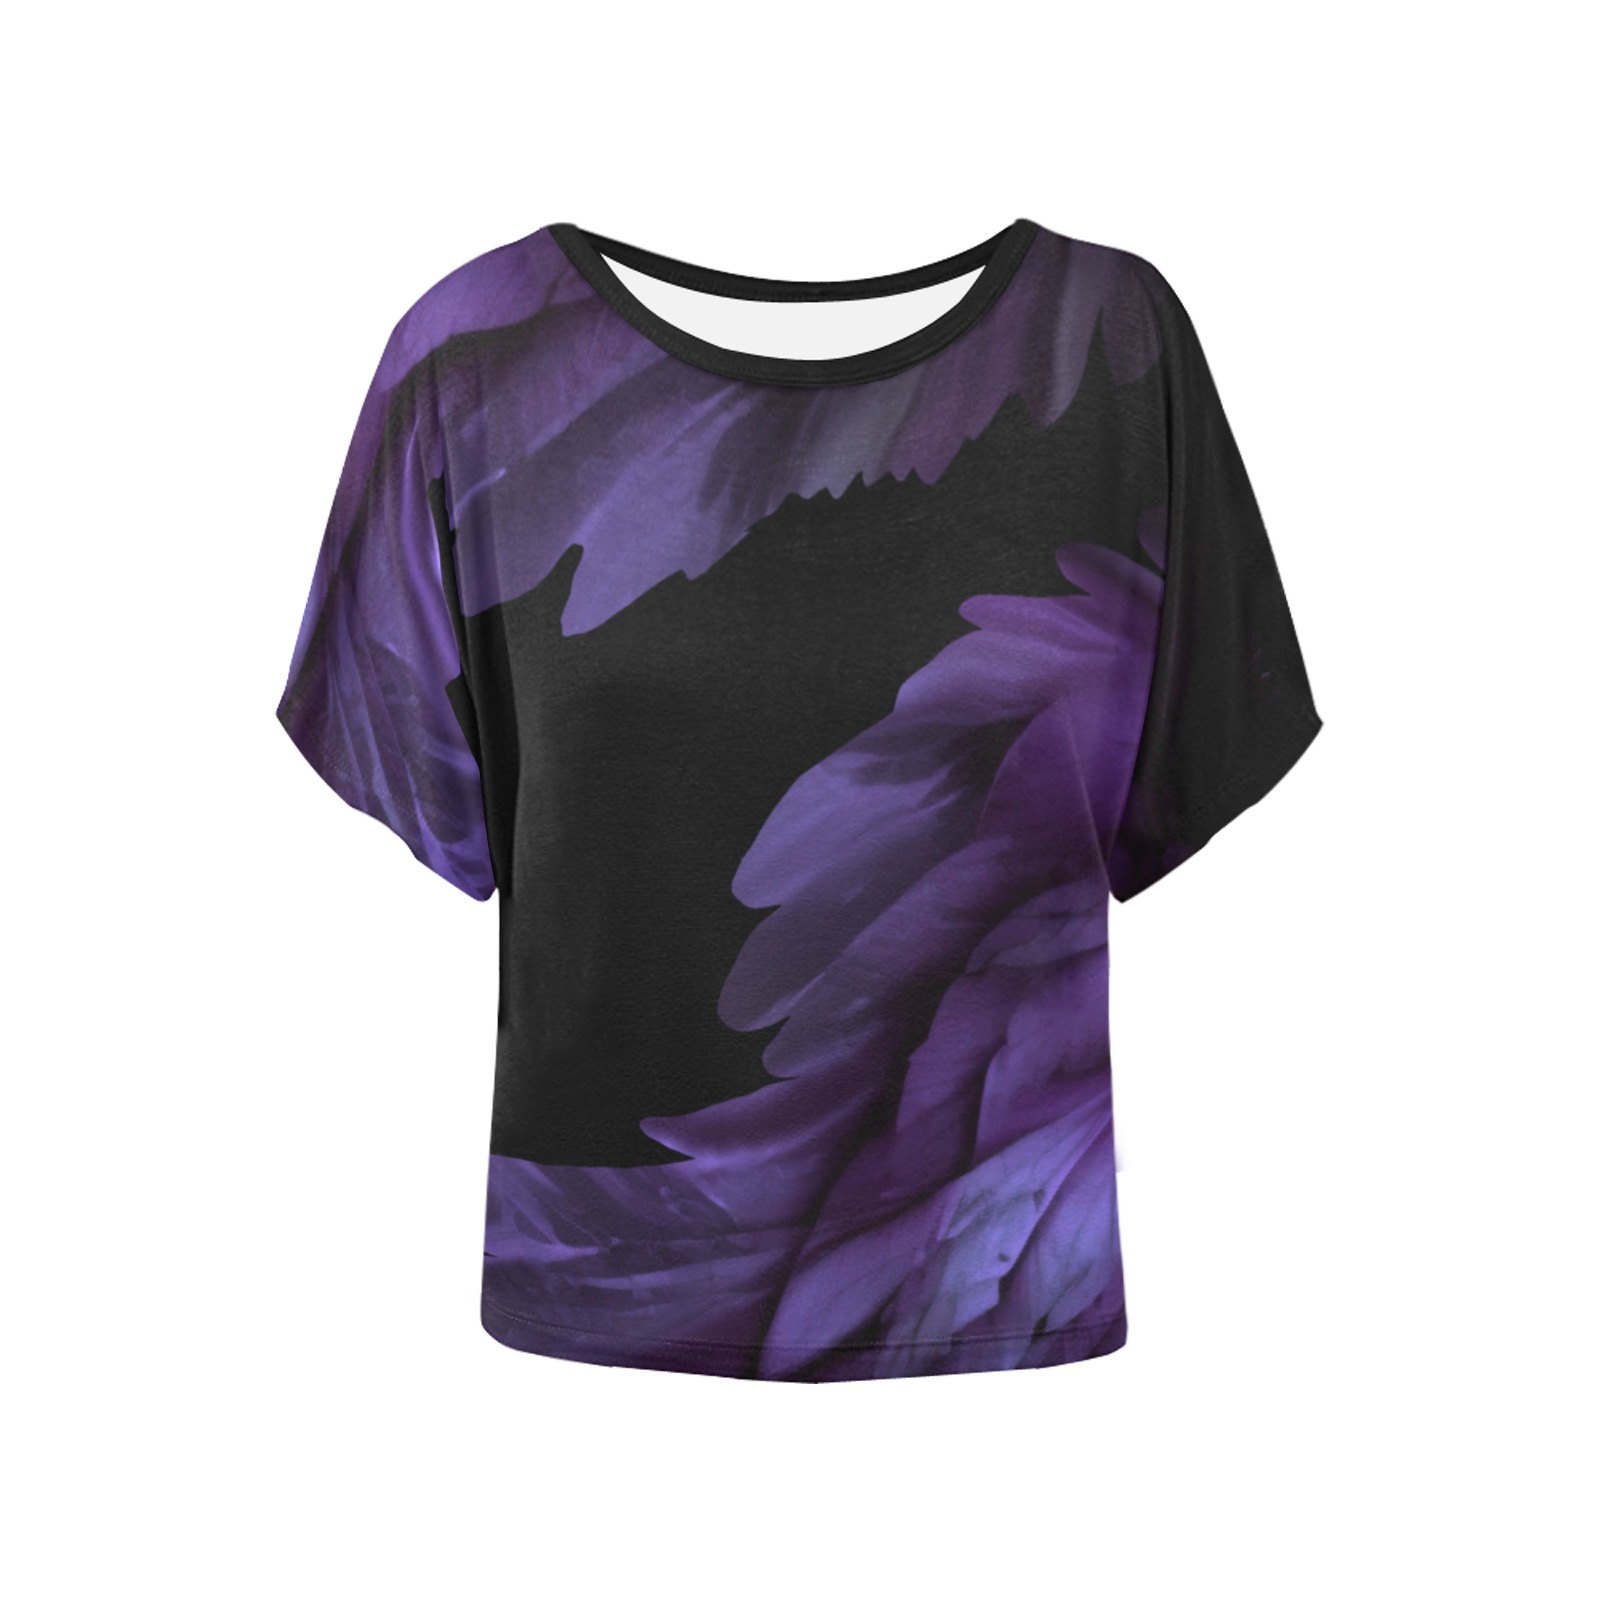 Ô Purple Wings on Black Women's Batwing-Sleeved Blouse T shirt (Model T44)